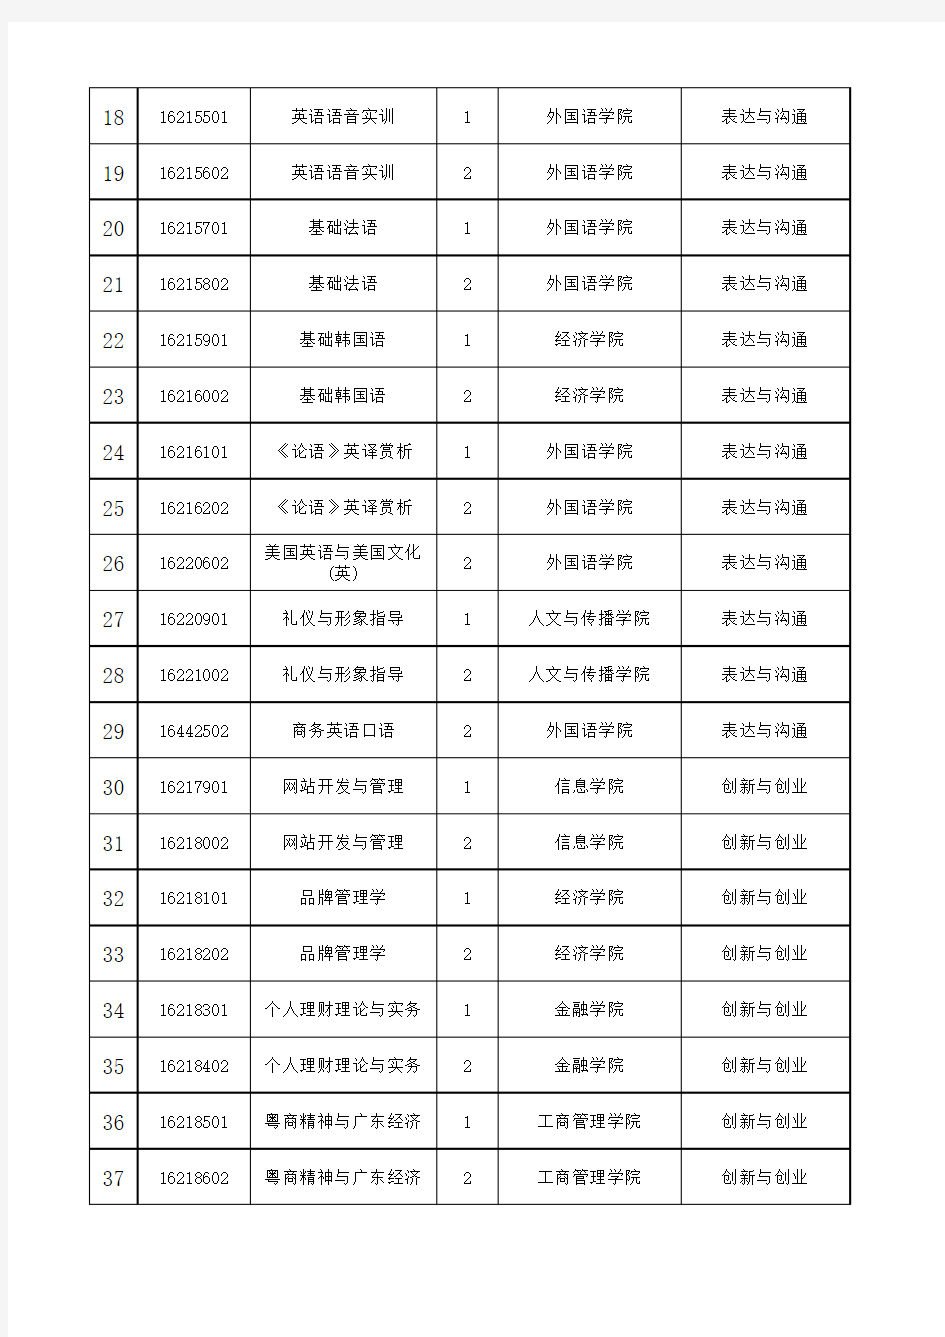 广东财经大学2017版通识选修课程设置一览表(2017.9.6 ...